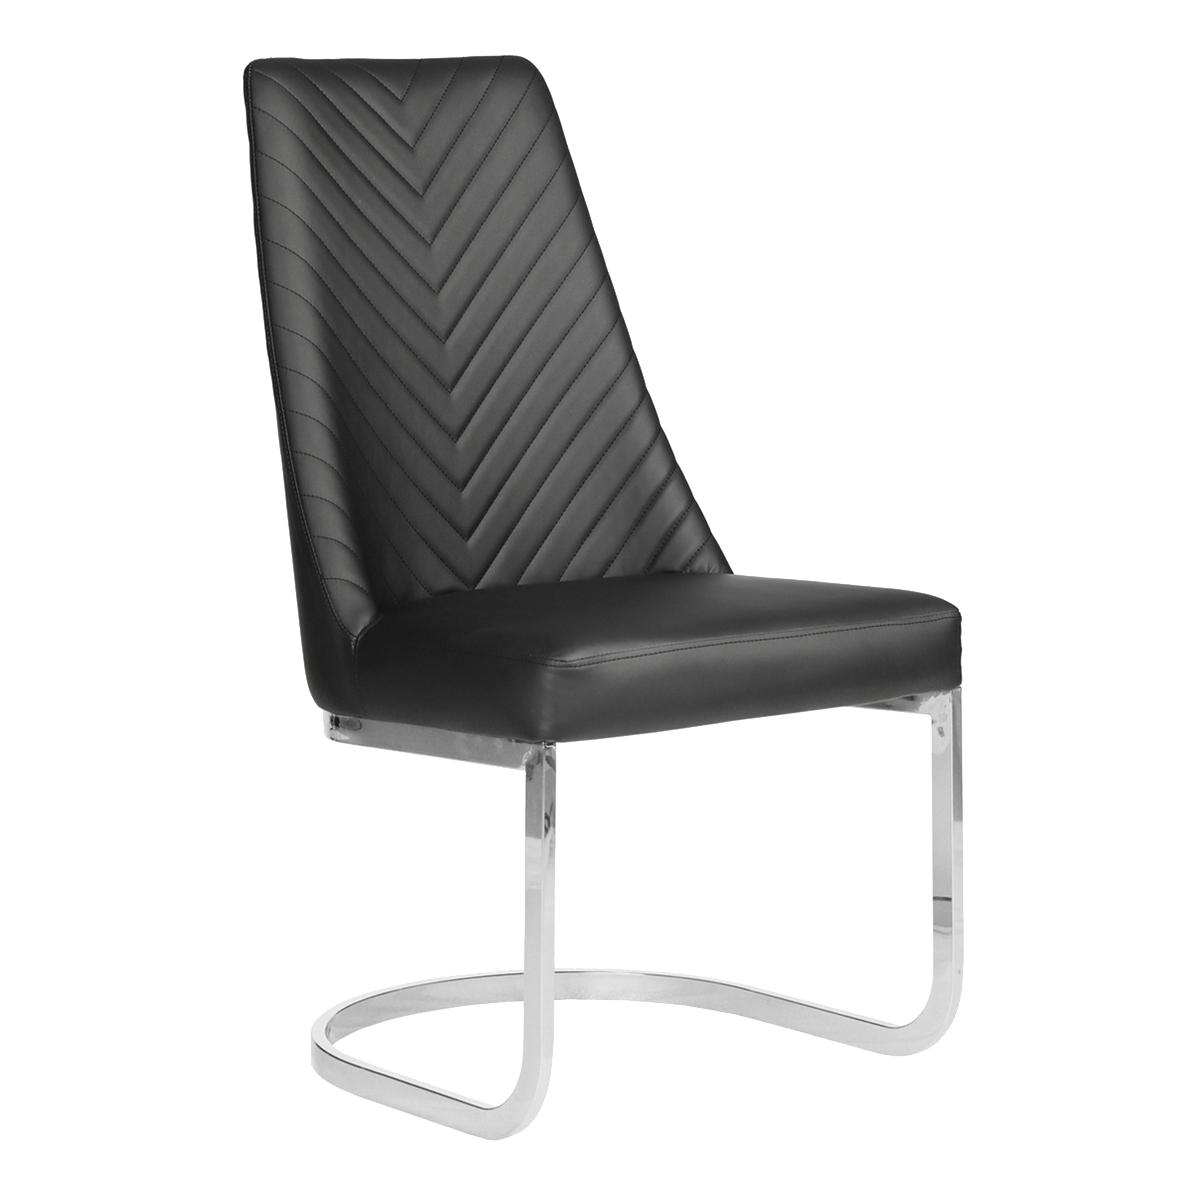 Whale Spa Black Customer Chair Chevron 8110 Nail Salon Customer Chair | Salon and Spa Furniture